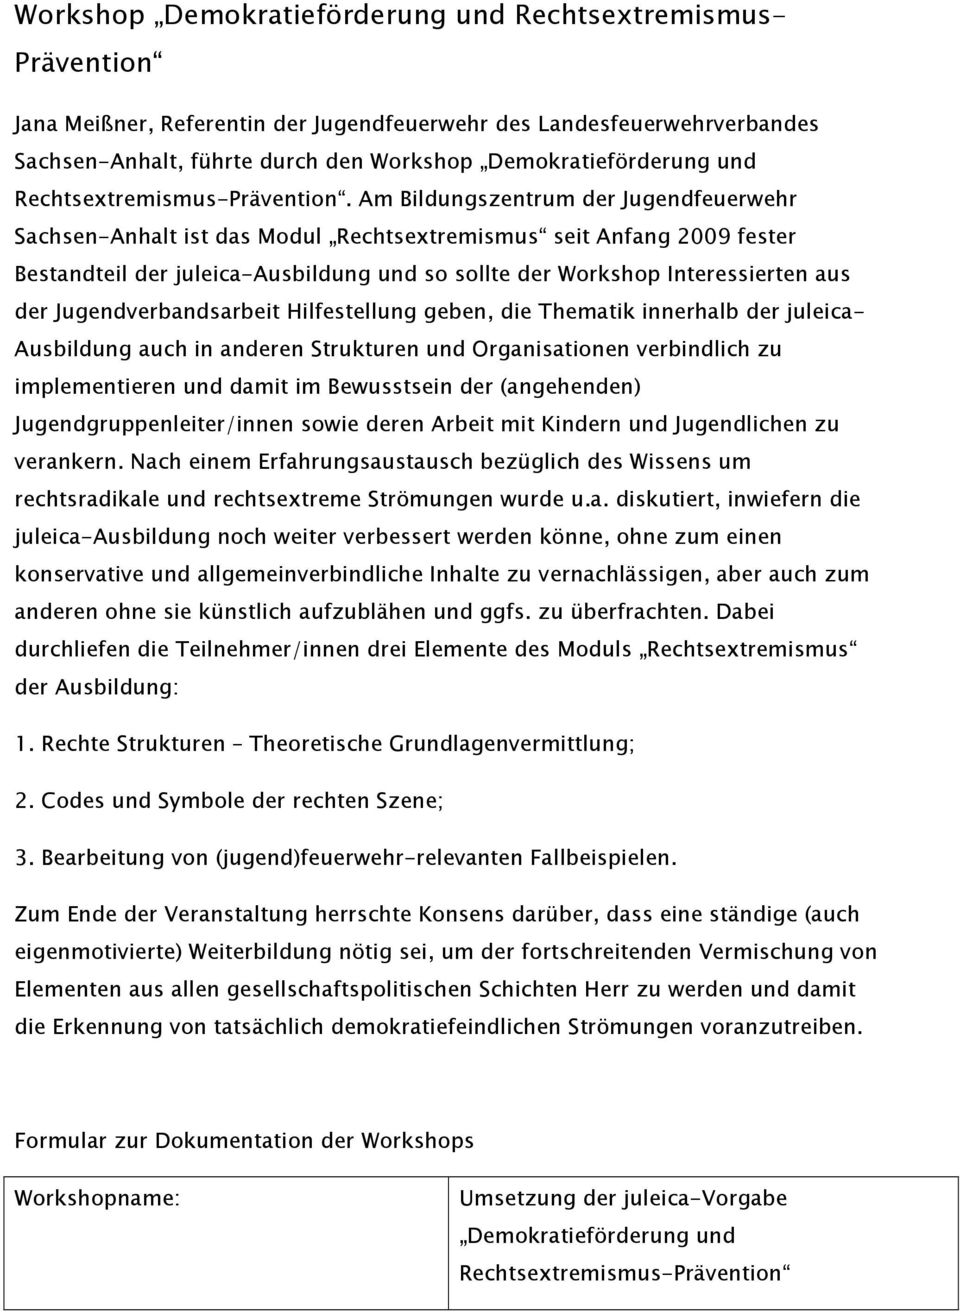 Am Bildungszentrum der Jugendfeuerwehr Sachsen-Anhalt ist das Modul Rechtsextremismus seit Anfang 2009 fester Bestandteil der juleica-ausbildung und so sollte der Workshop Interessierten aus der